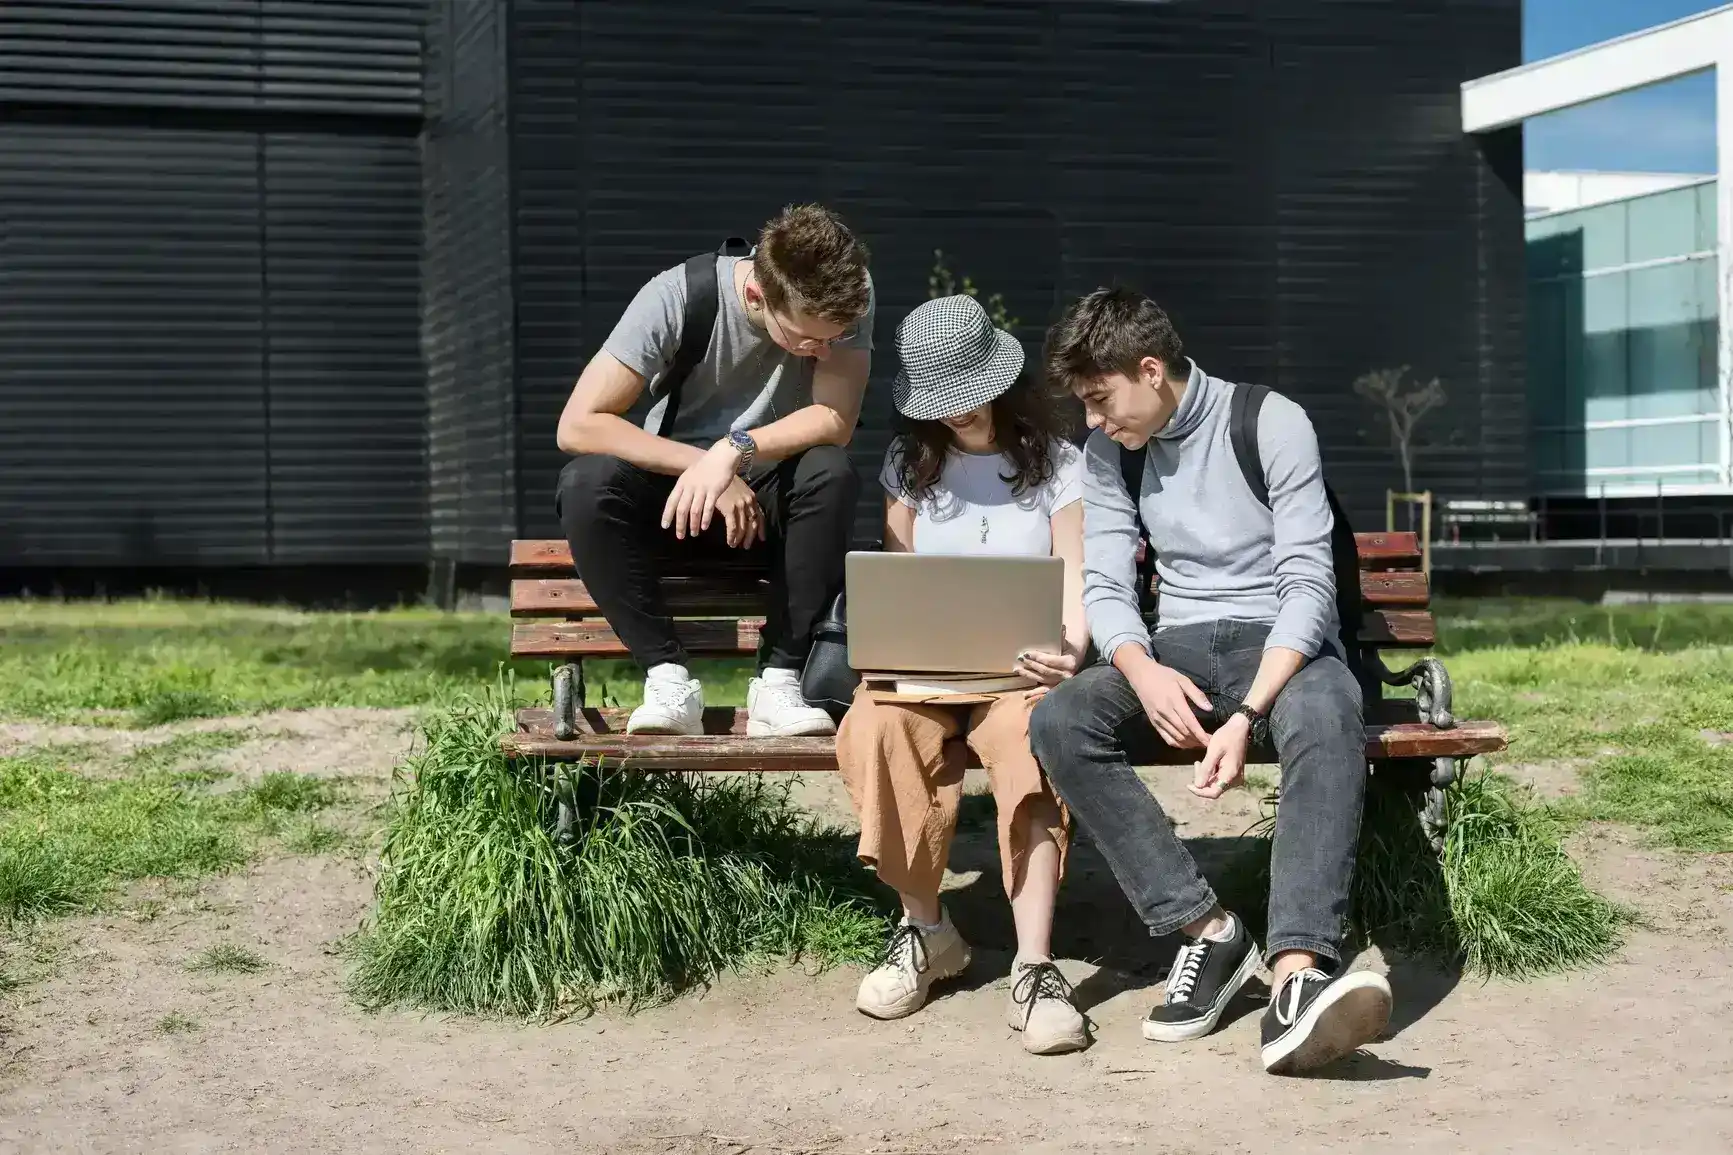 Drei Personen sitzen auf einer Bank und blicken gemeinsam in einen Laptop.